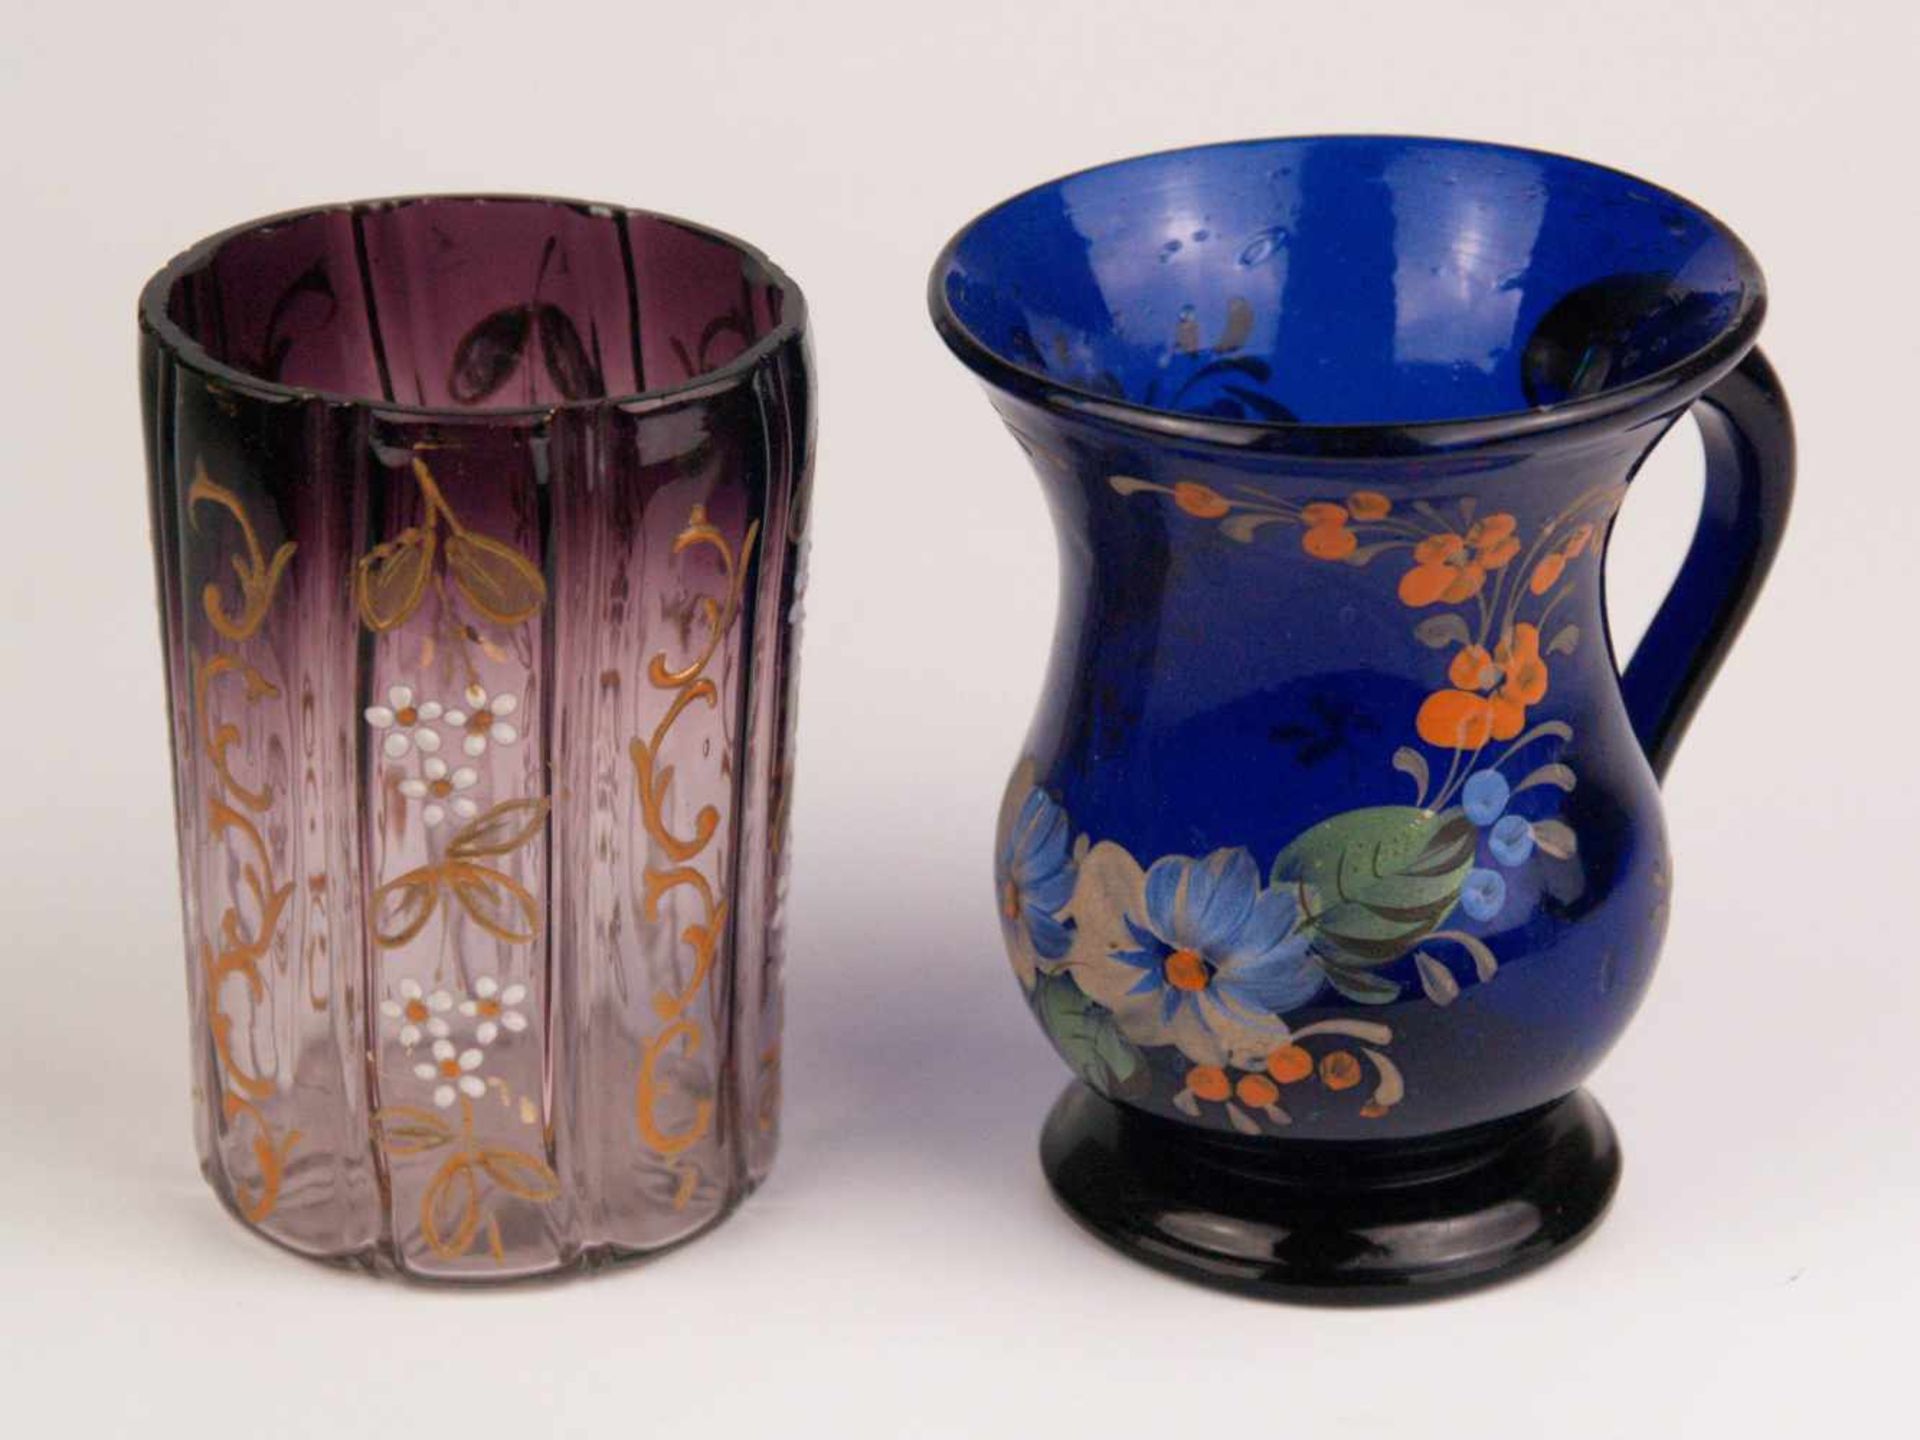 Zwei Becher - 1x Klarglas, teilweise lila getönt, zylindrischer gerillter Korpus, Email-